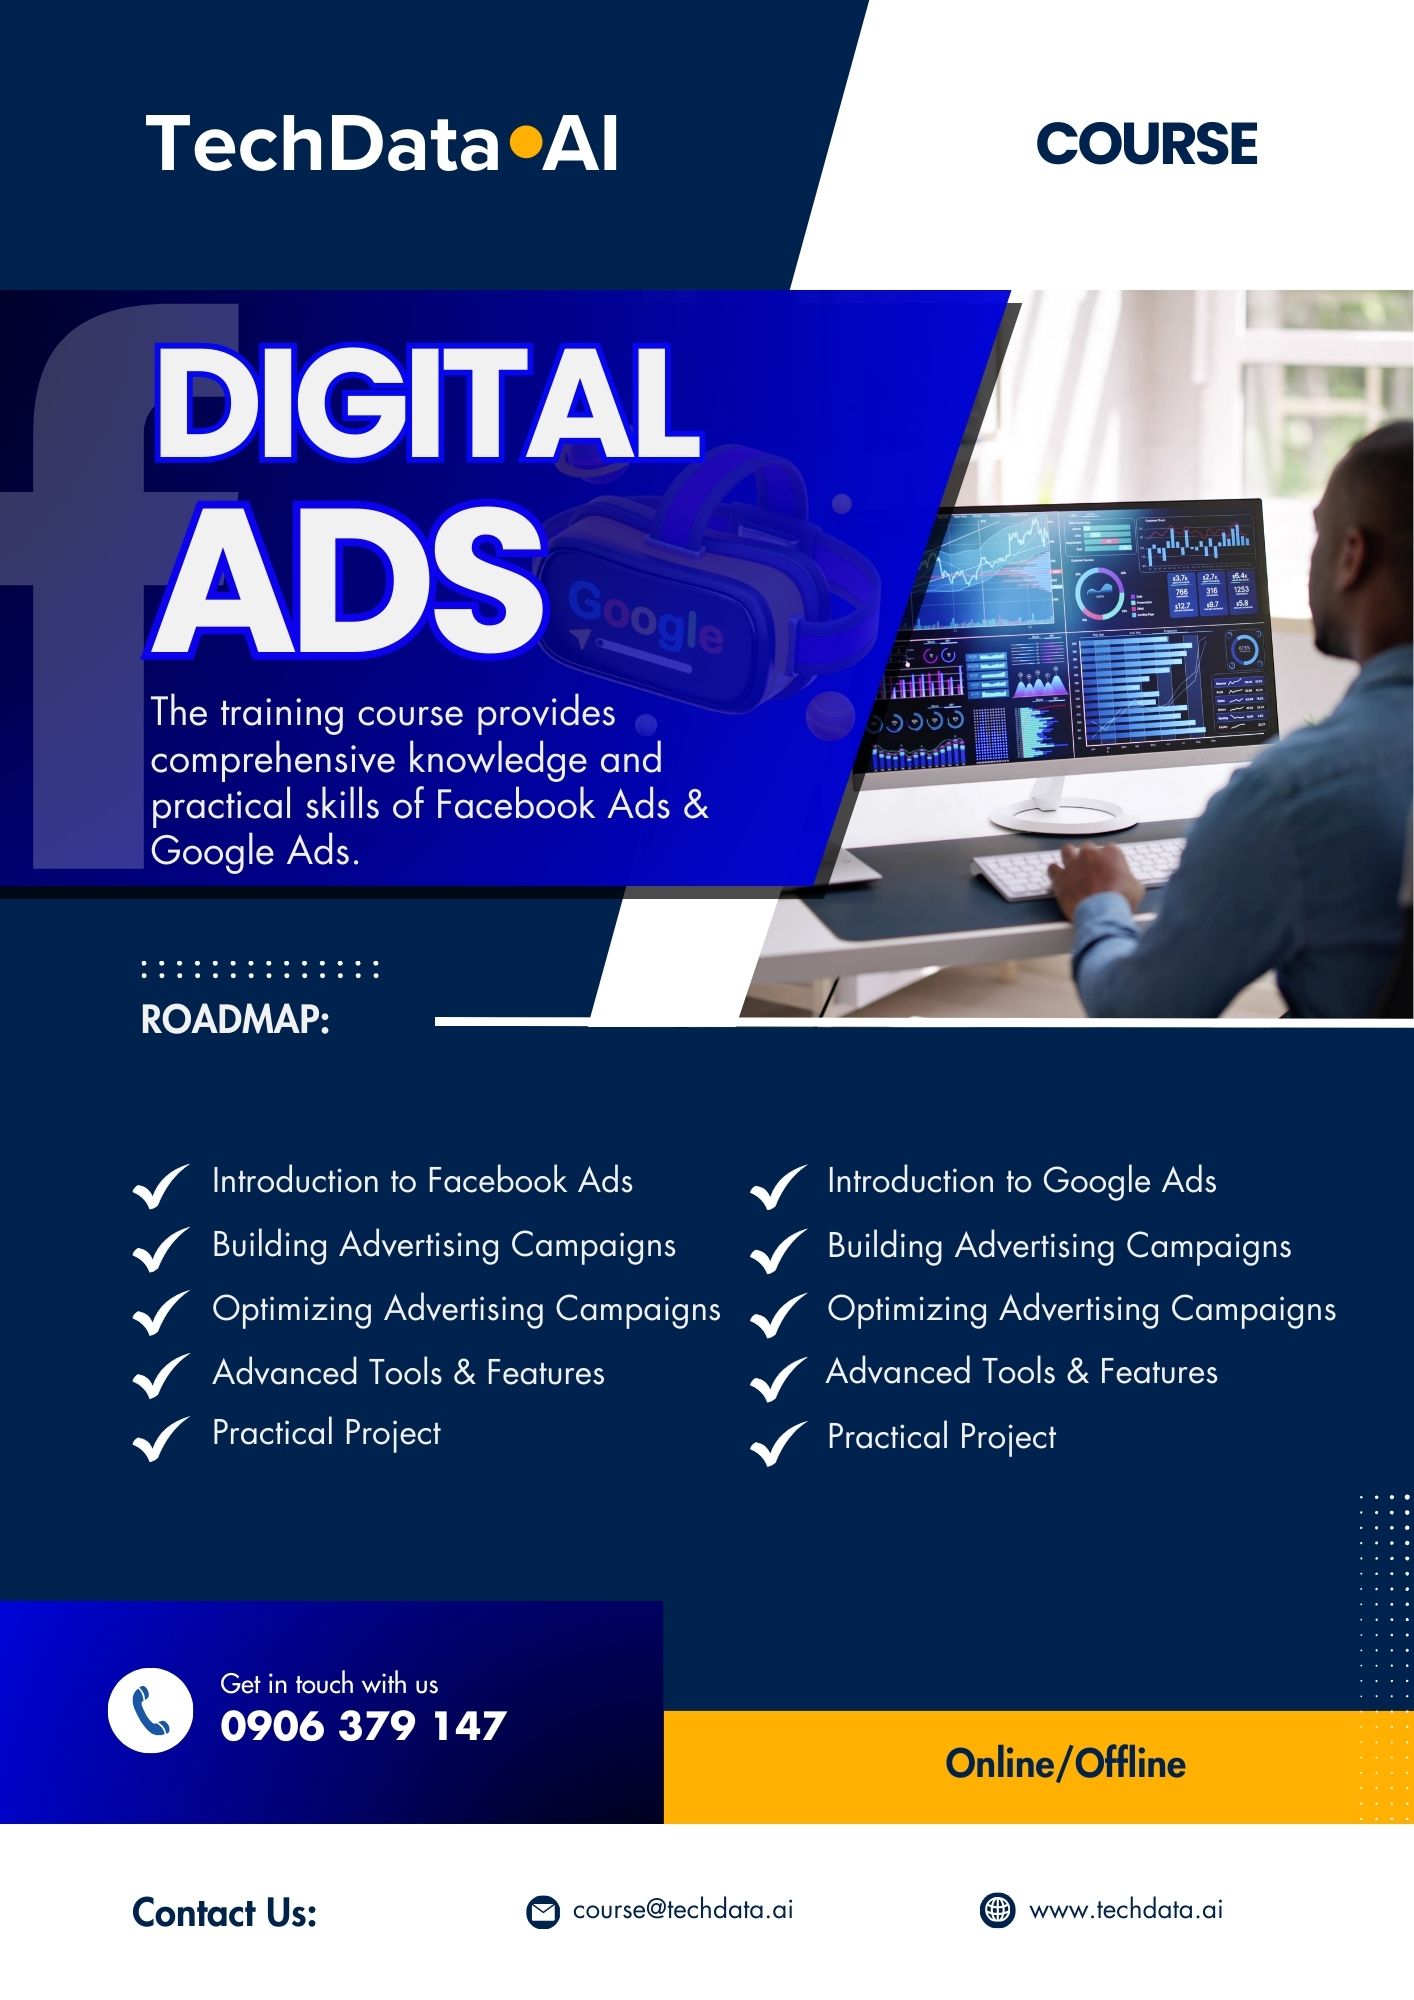 TechData.AI - Digital Ads Course